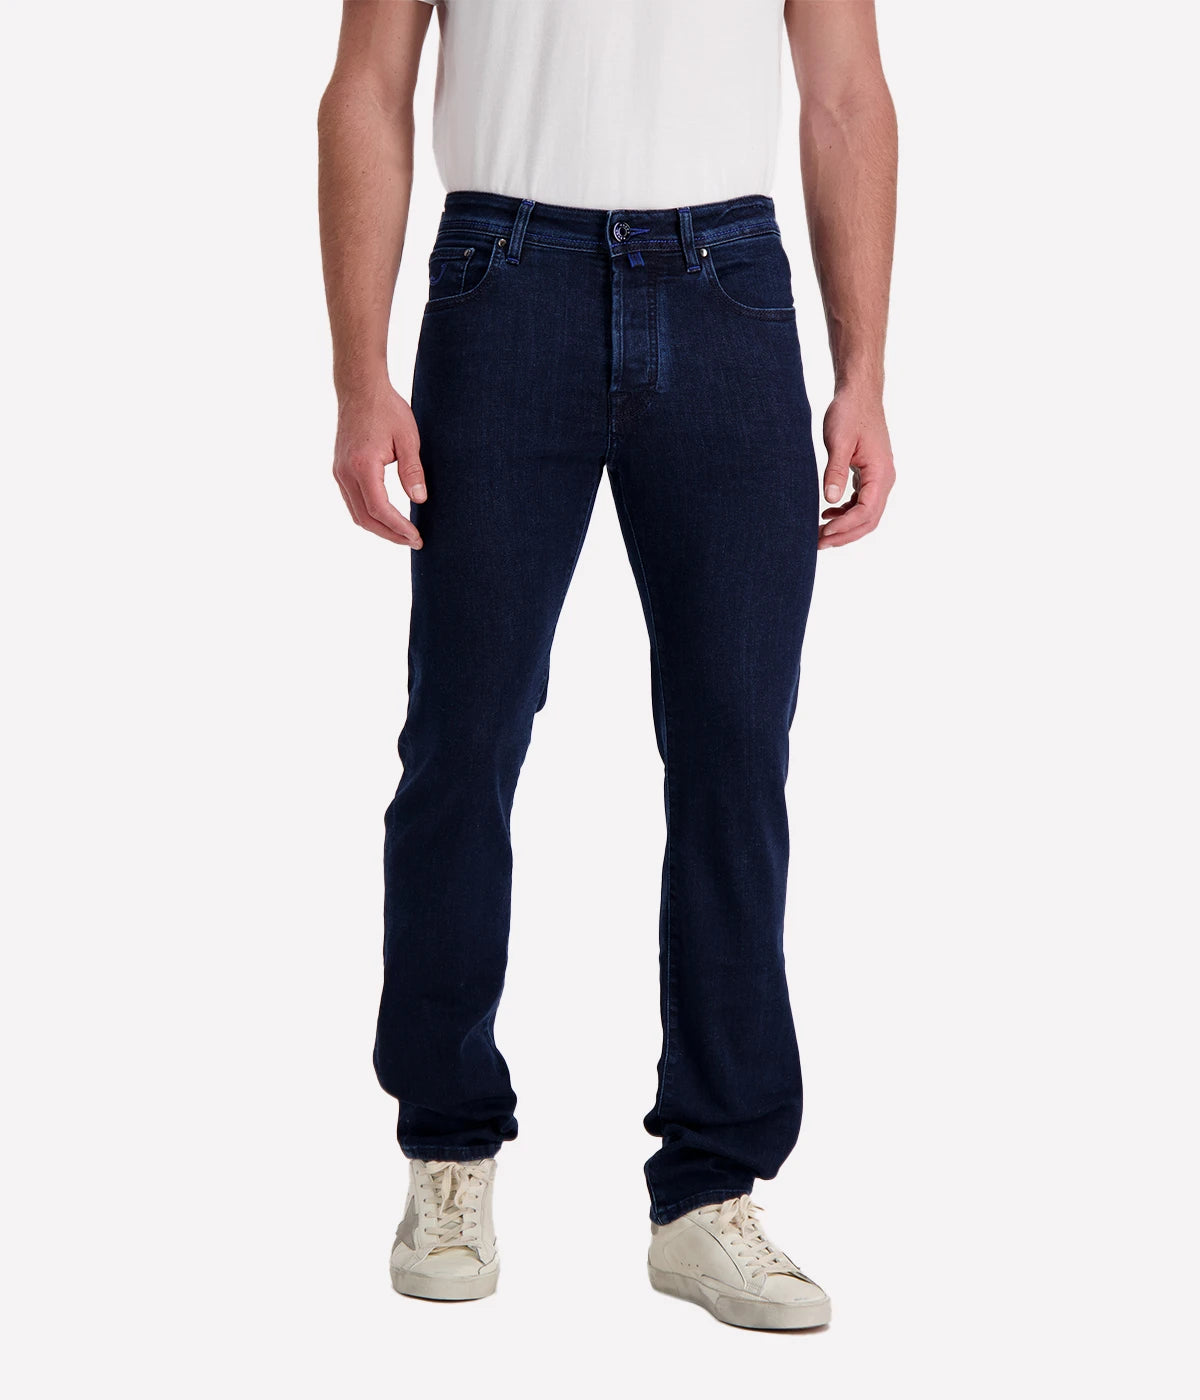 Bard 5 Pocket Slim Fit Jean in Dark Blue Landscape